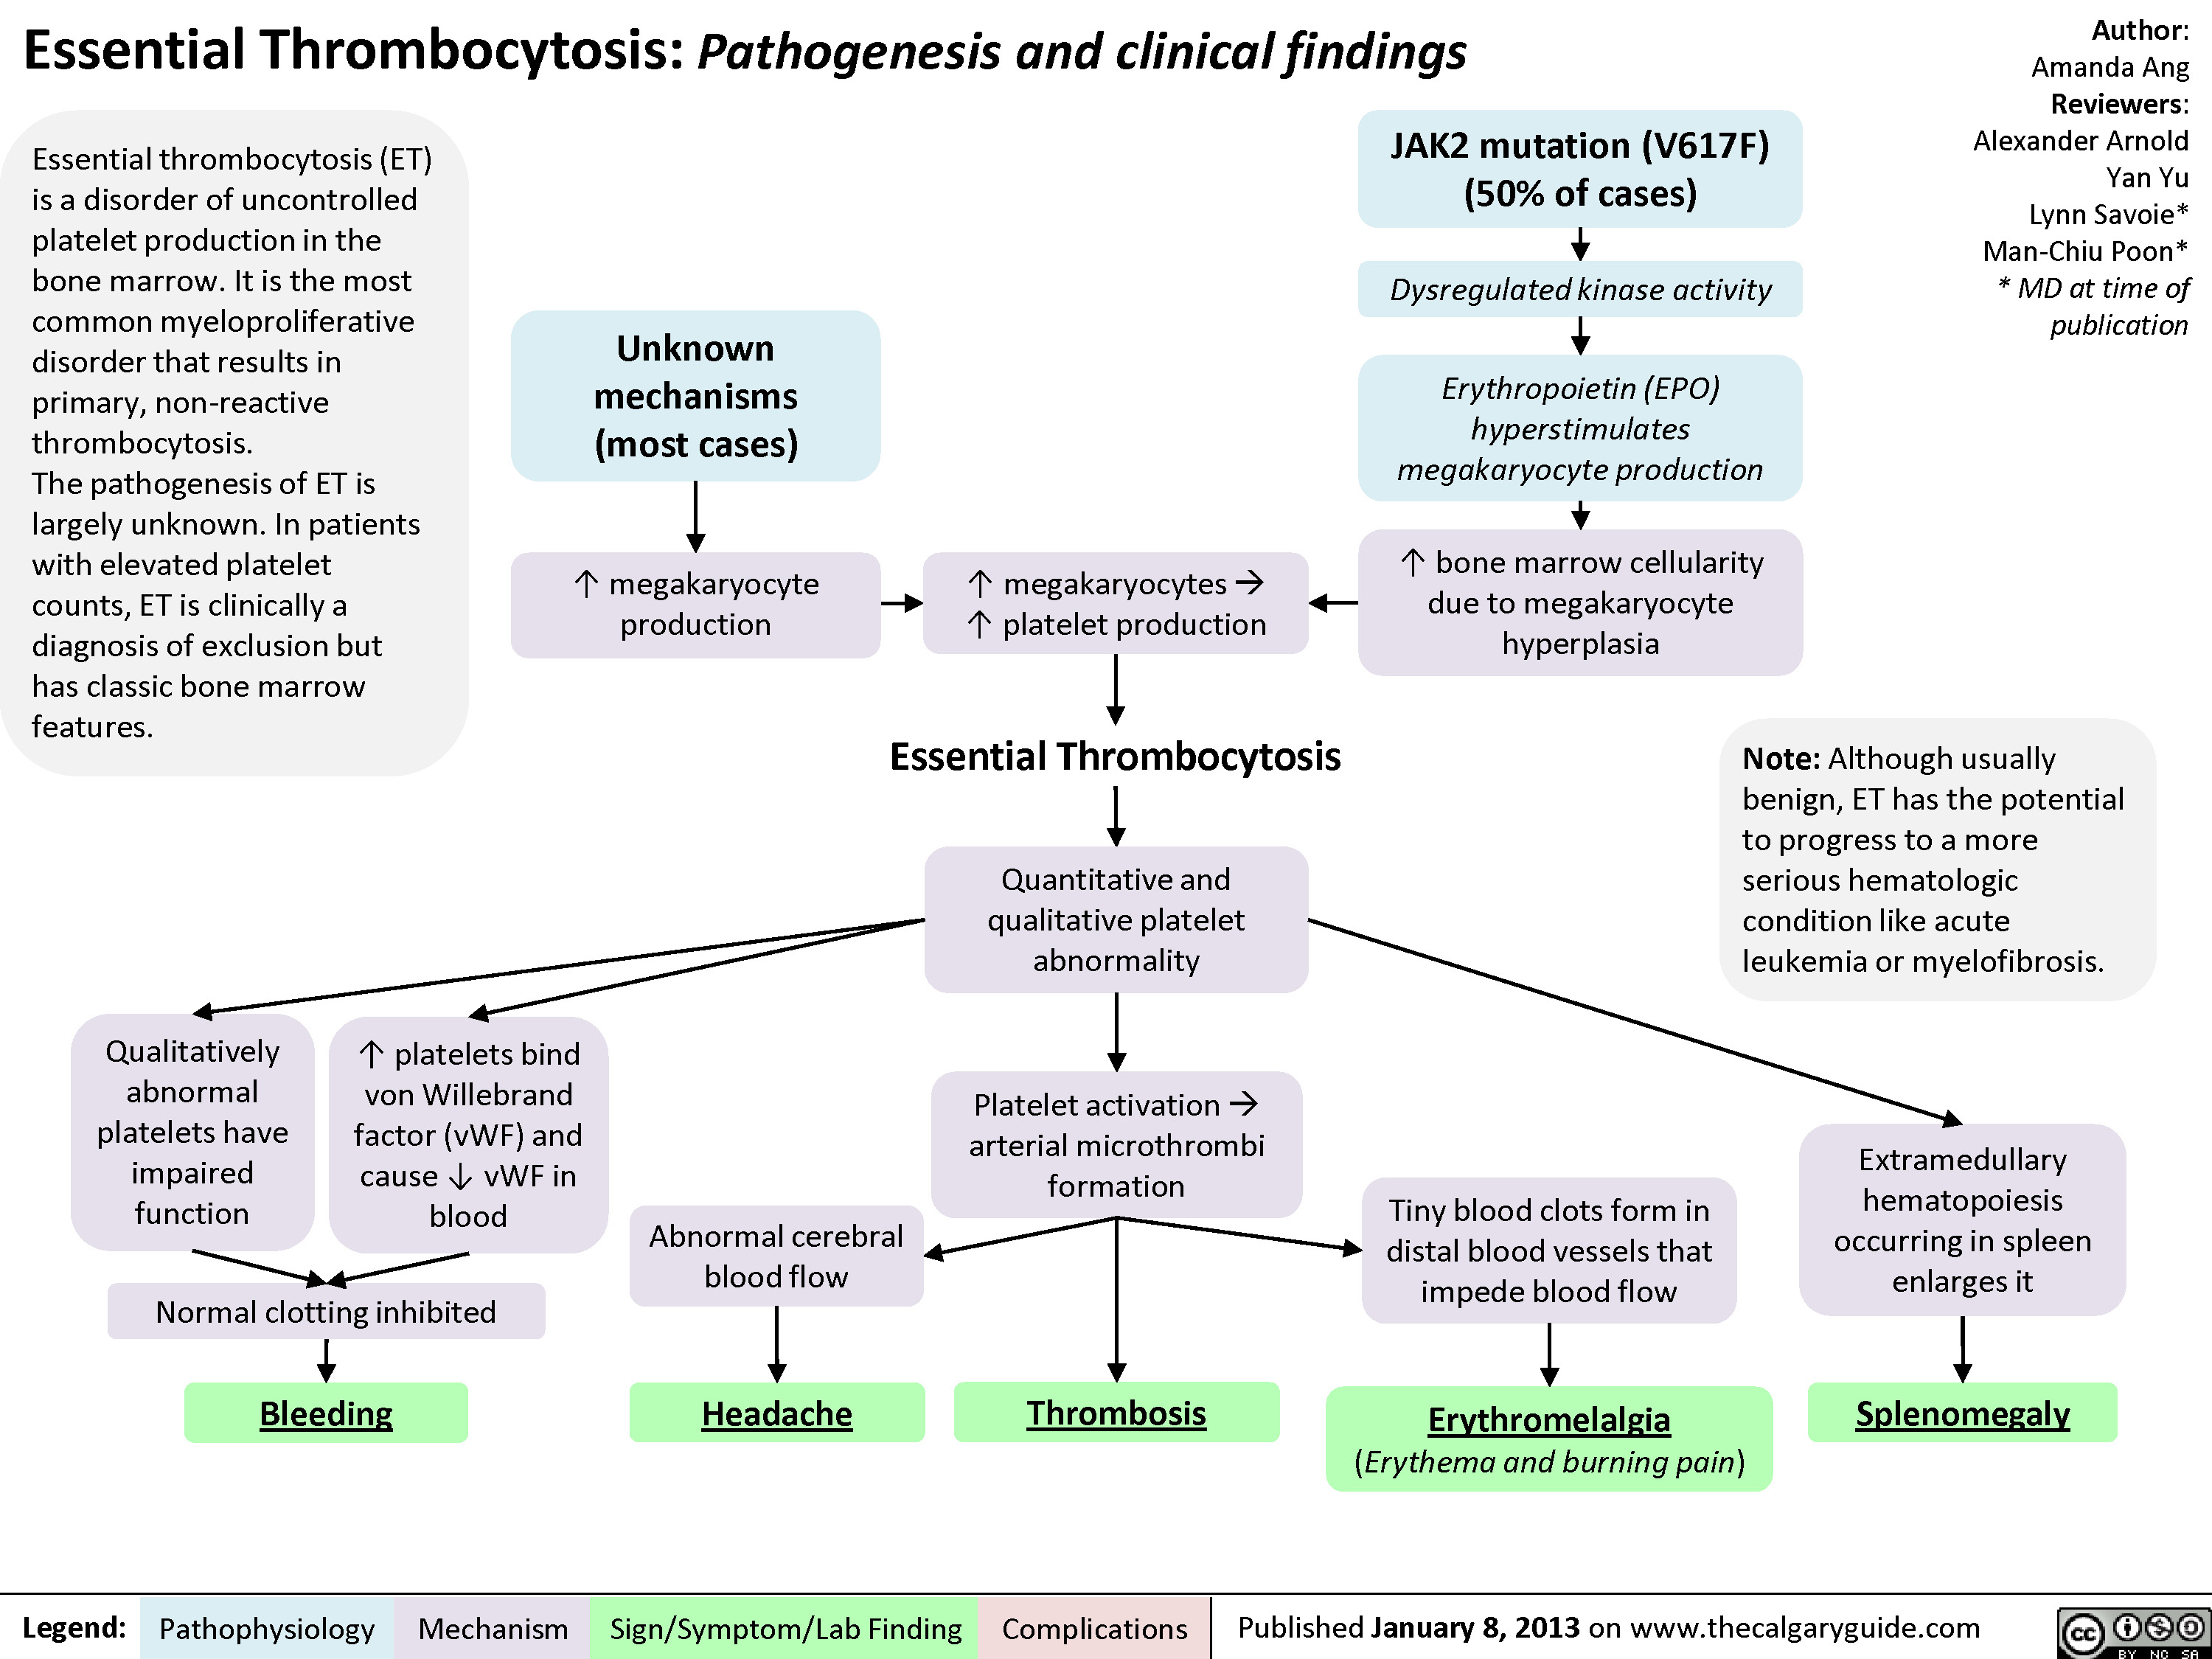 Essential Thrombocytosis (ET)